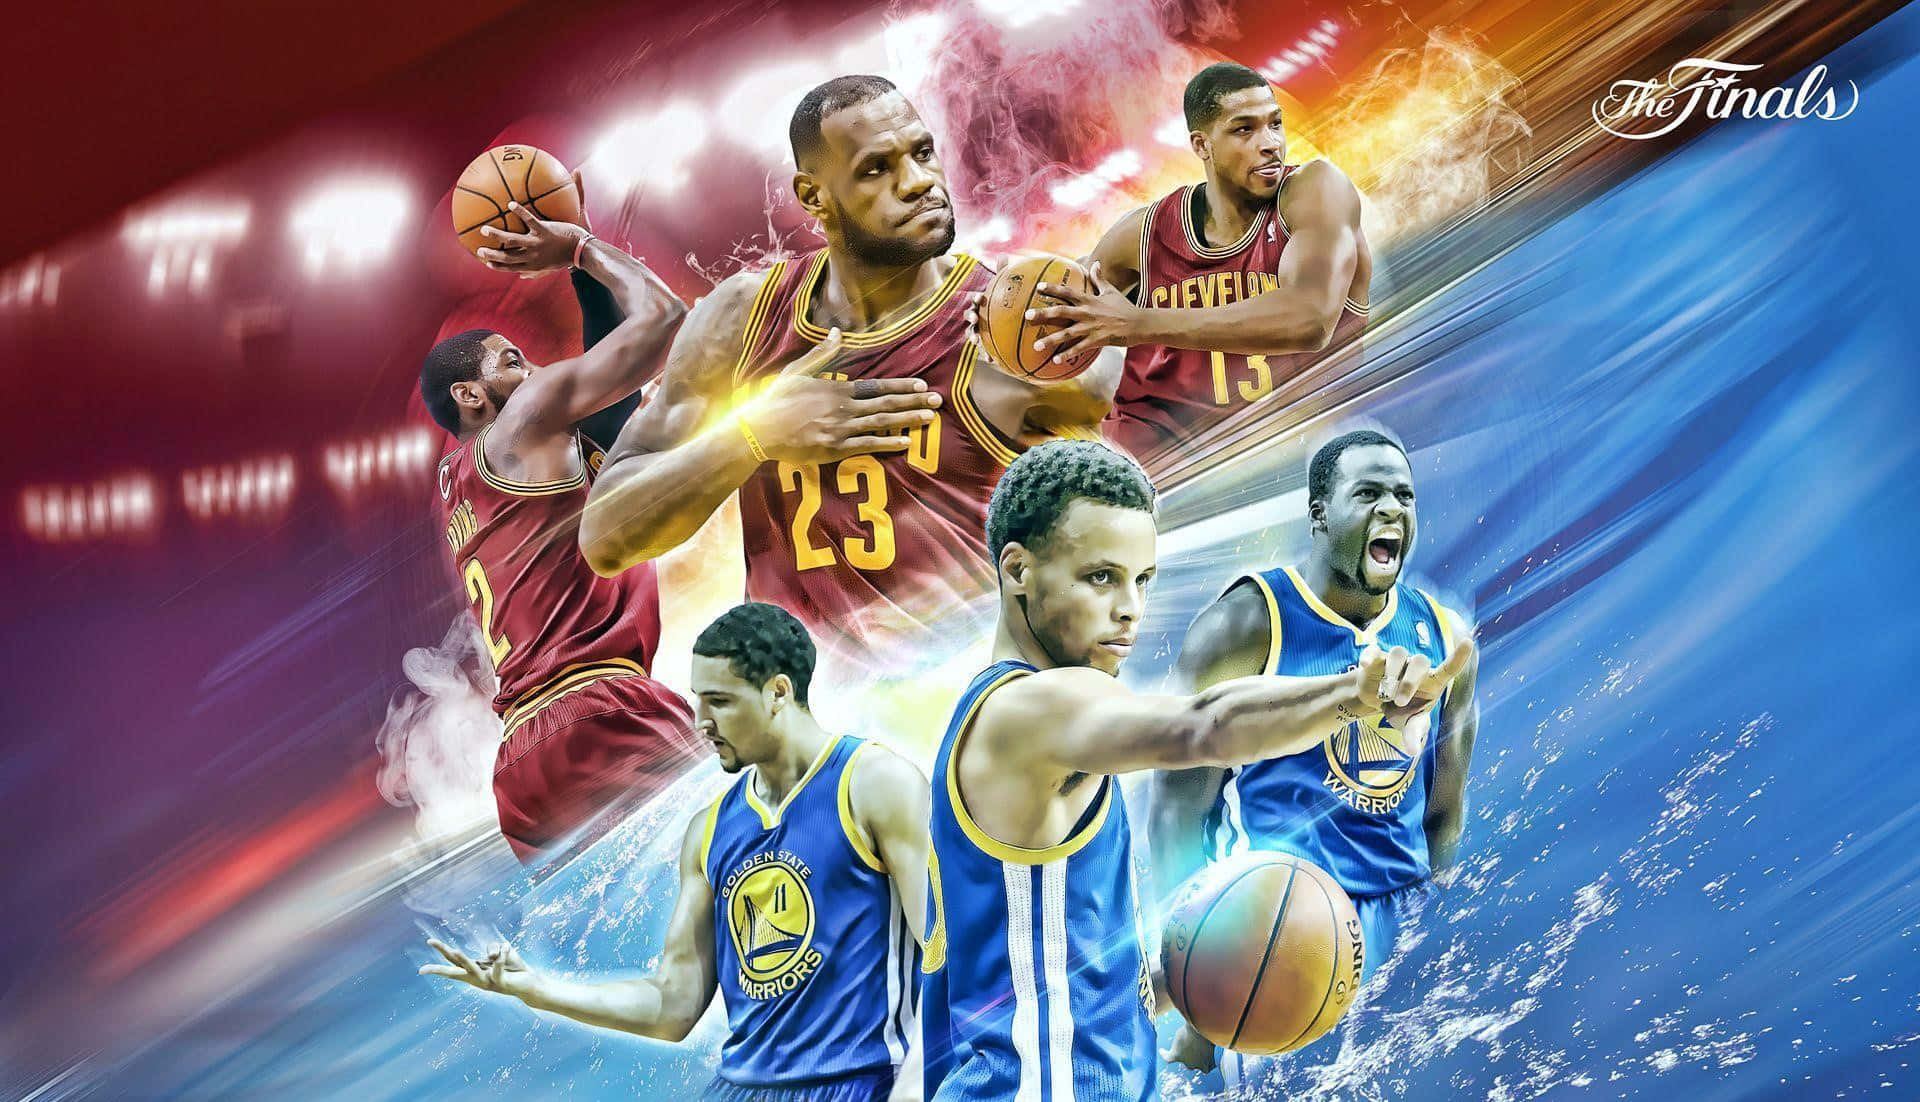 49 Cool NBA Wallpapers for iPhone  WallpaperSafari